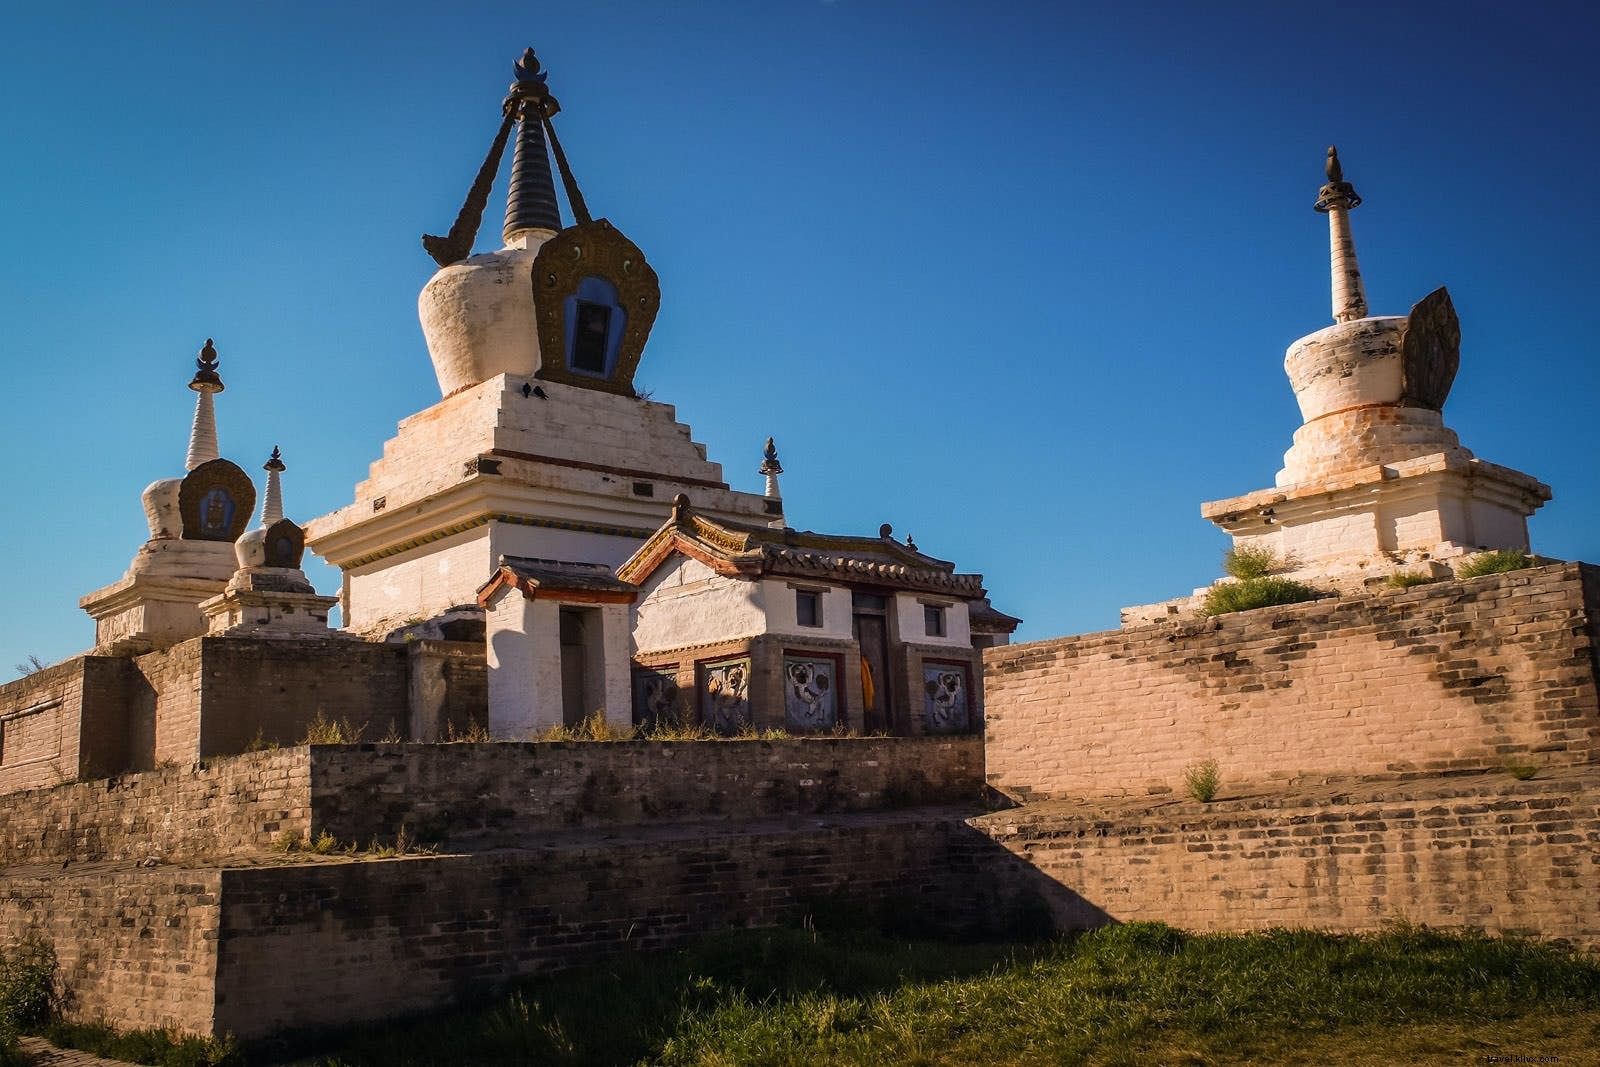 Pays du ciel bleu :10 raisons de visiter la Mongolie maintenant 